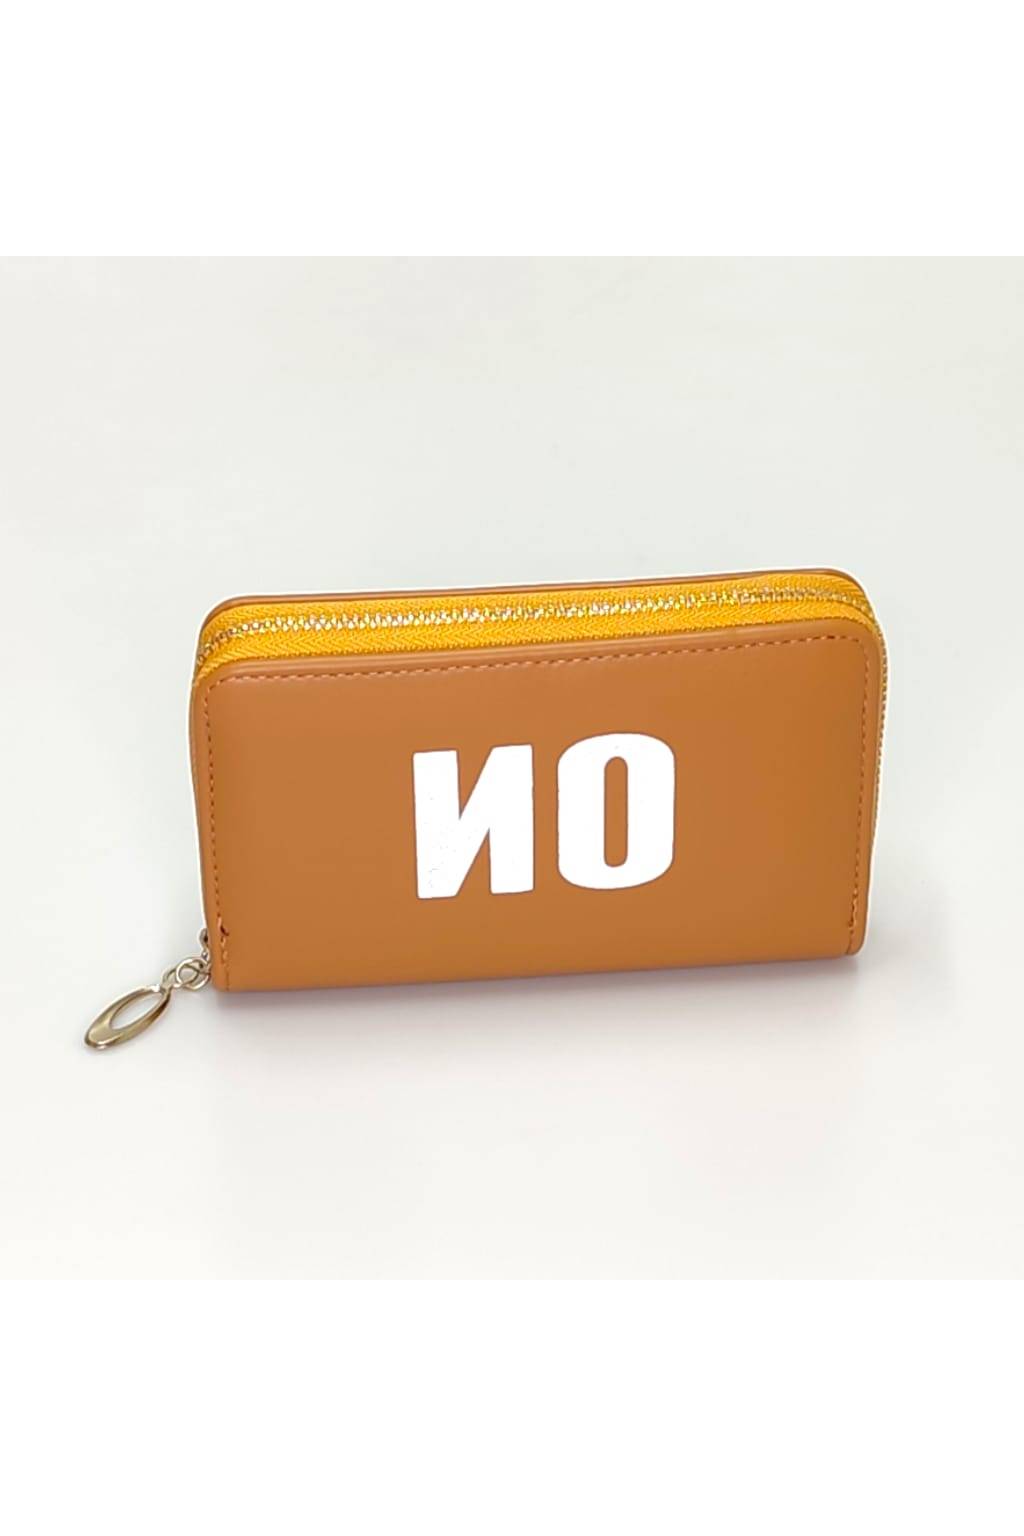 Dámska peňaženka D 7258 M svetlo hnedá www.kabelky vypredaj (2)